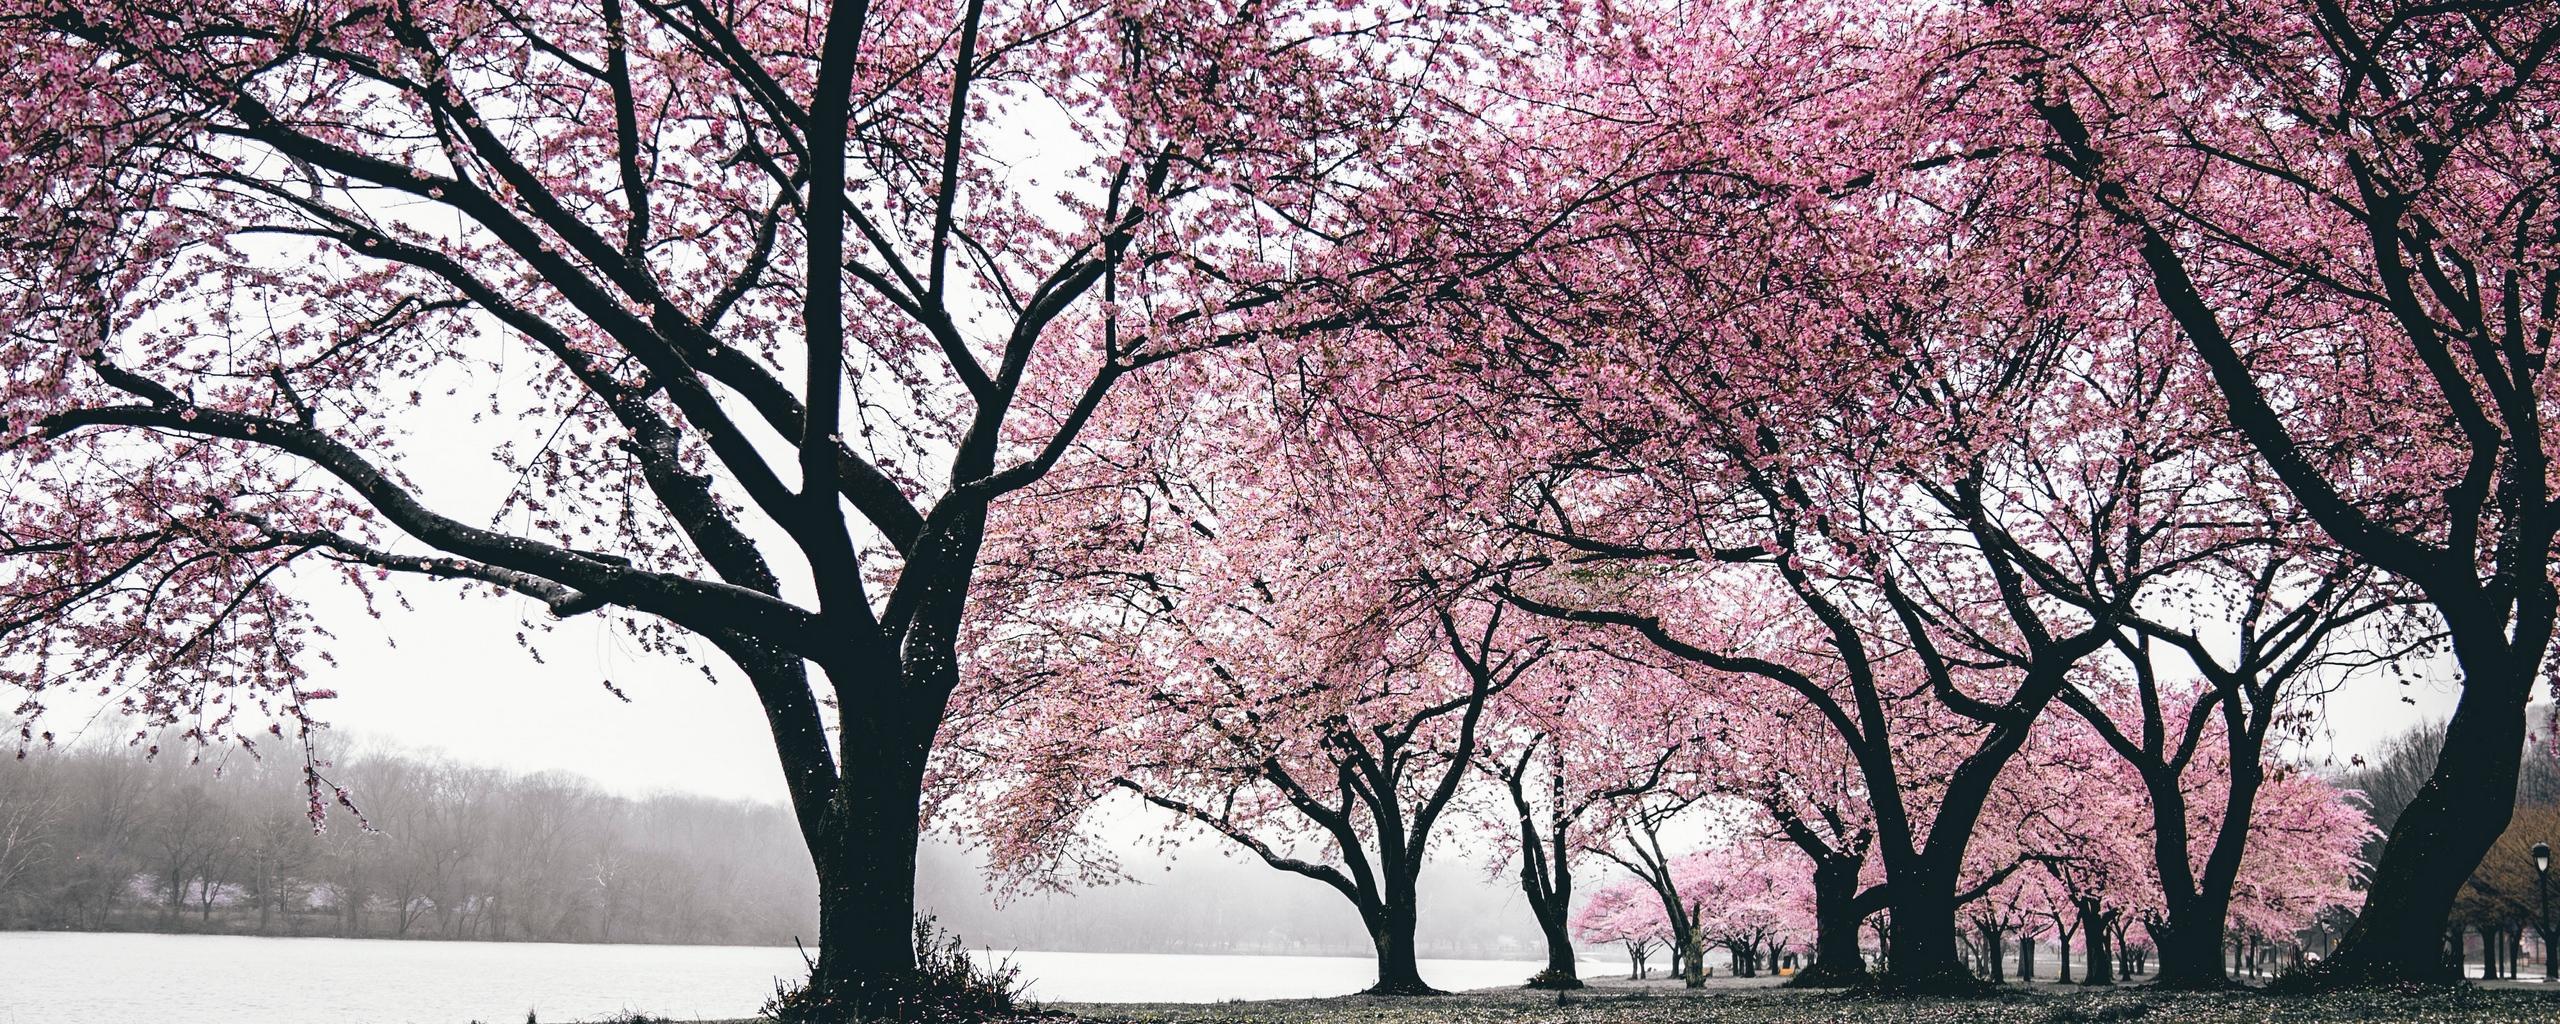 Sakura Trees Wallpapers - Wallpaper Cave